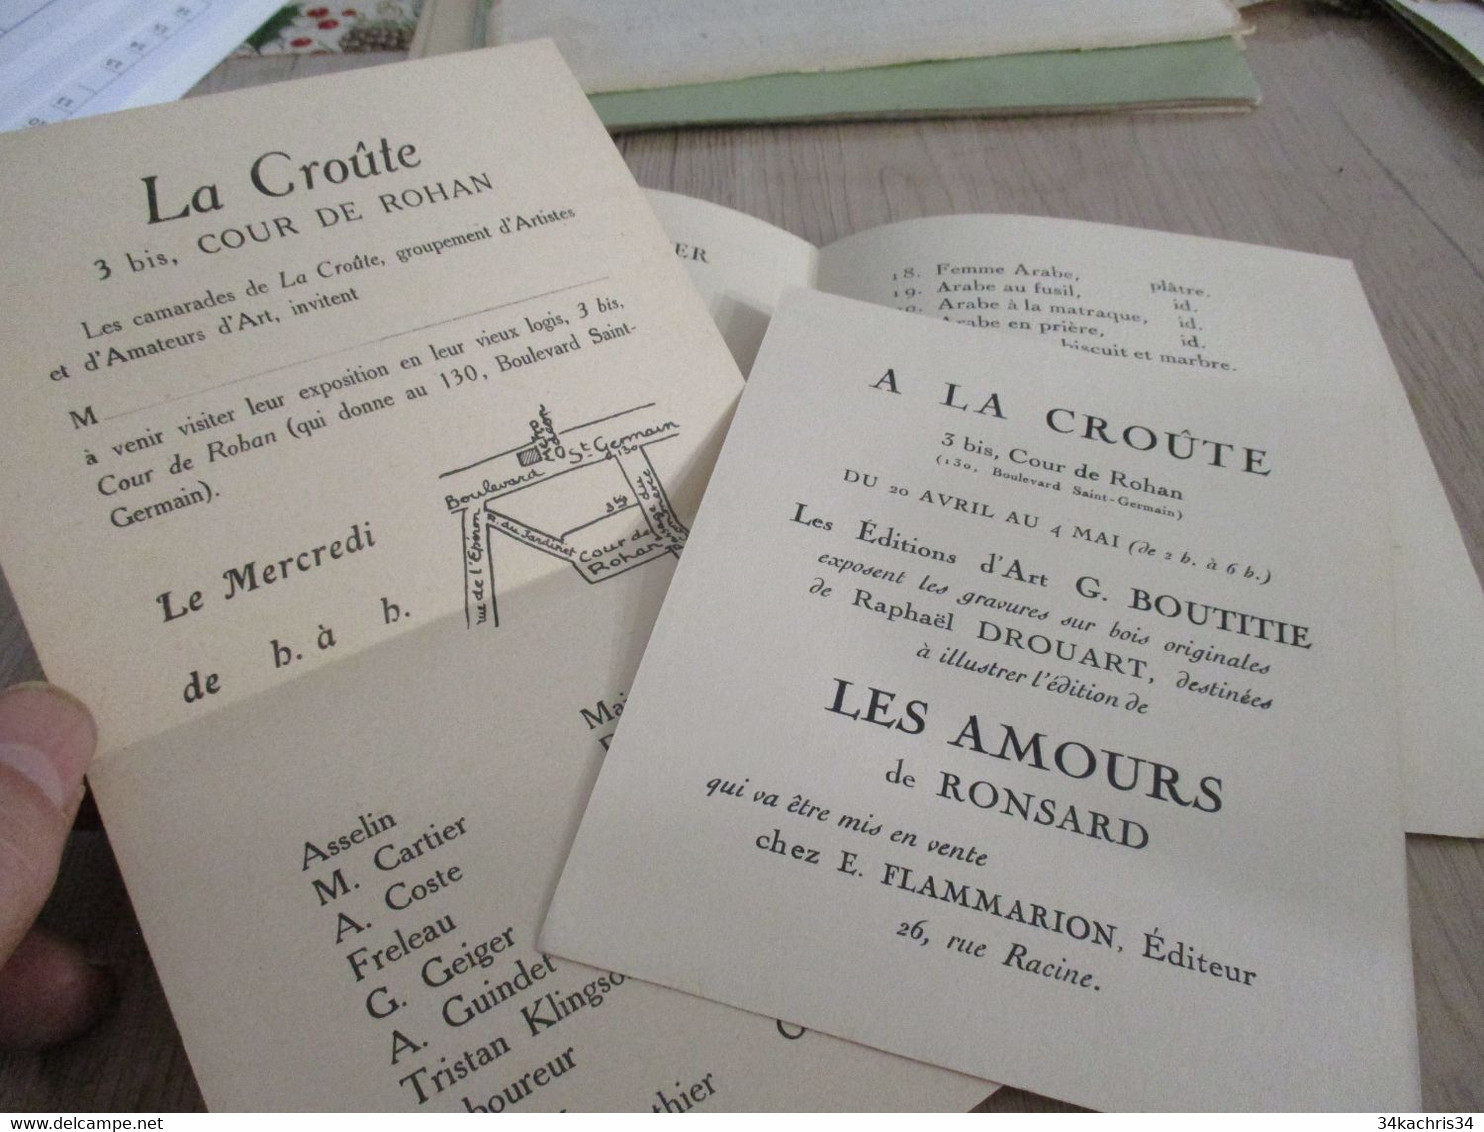 Moreau Vauthier Et Renefer X3 Documents Exposition La Croûte Paris 1921 - Historical Documents